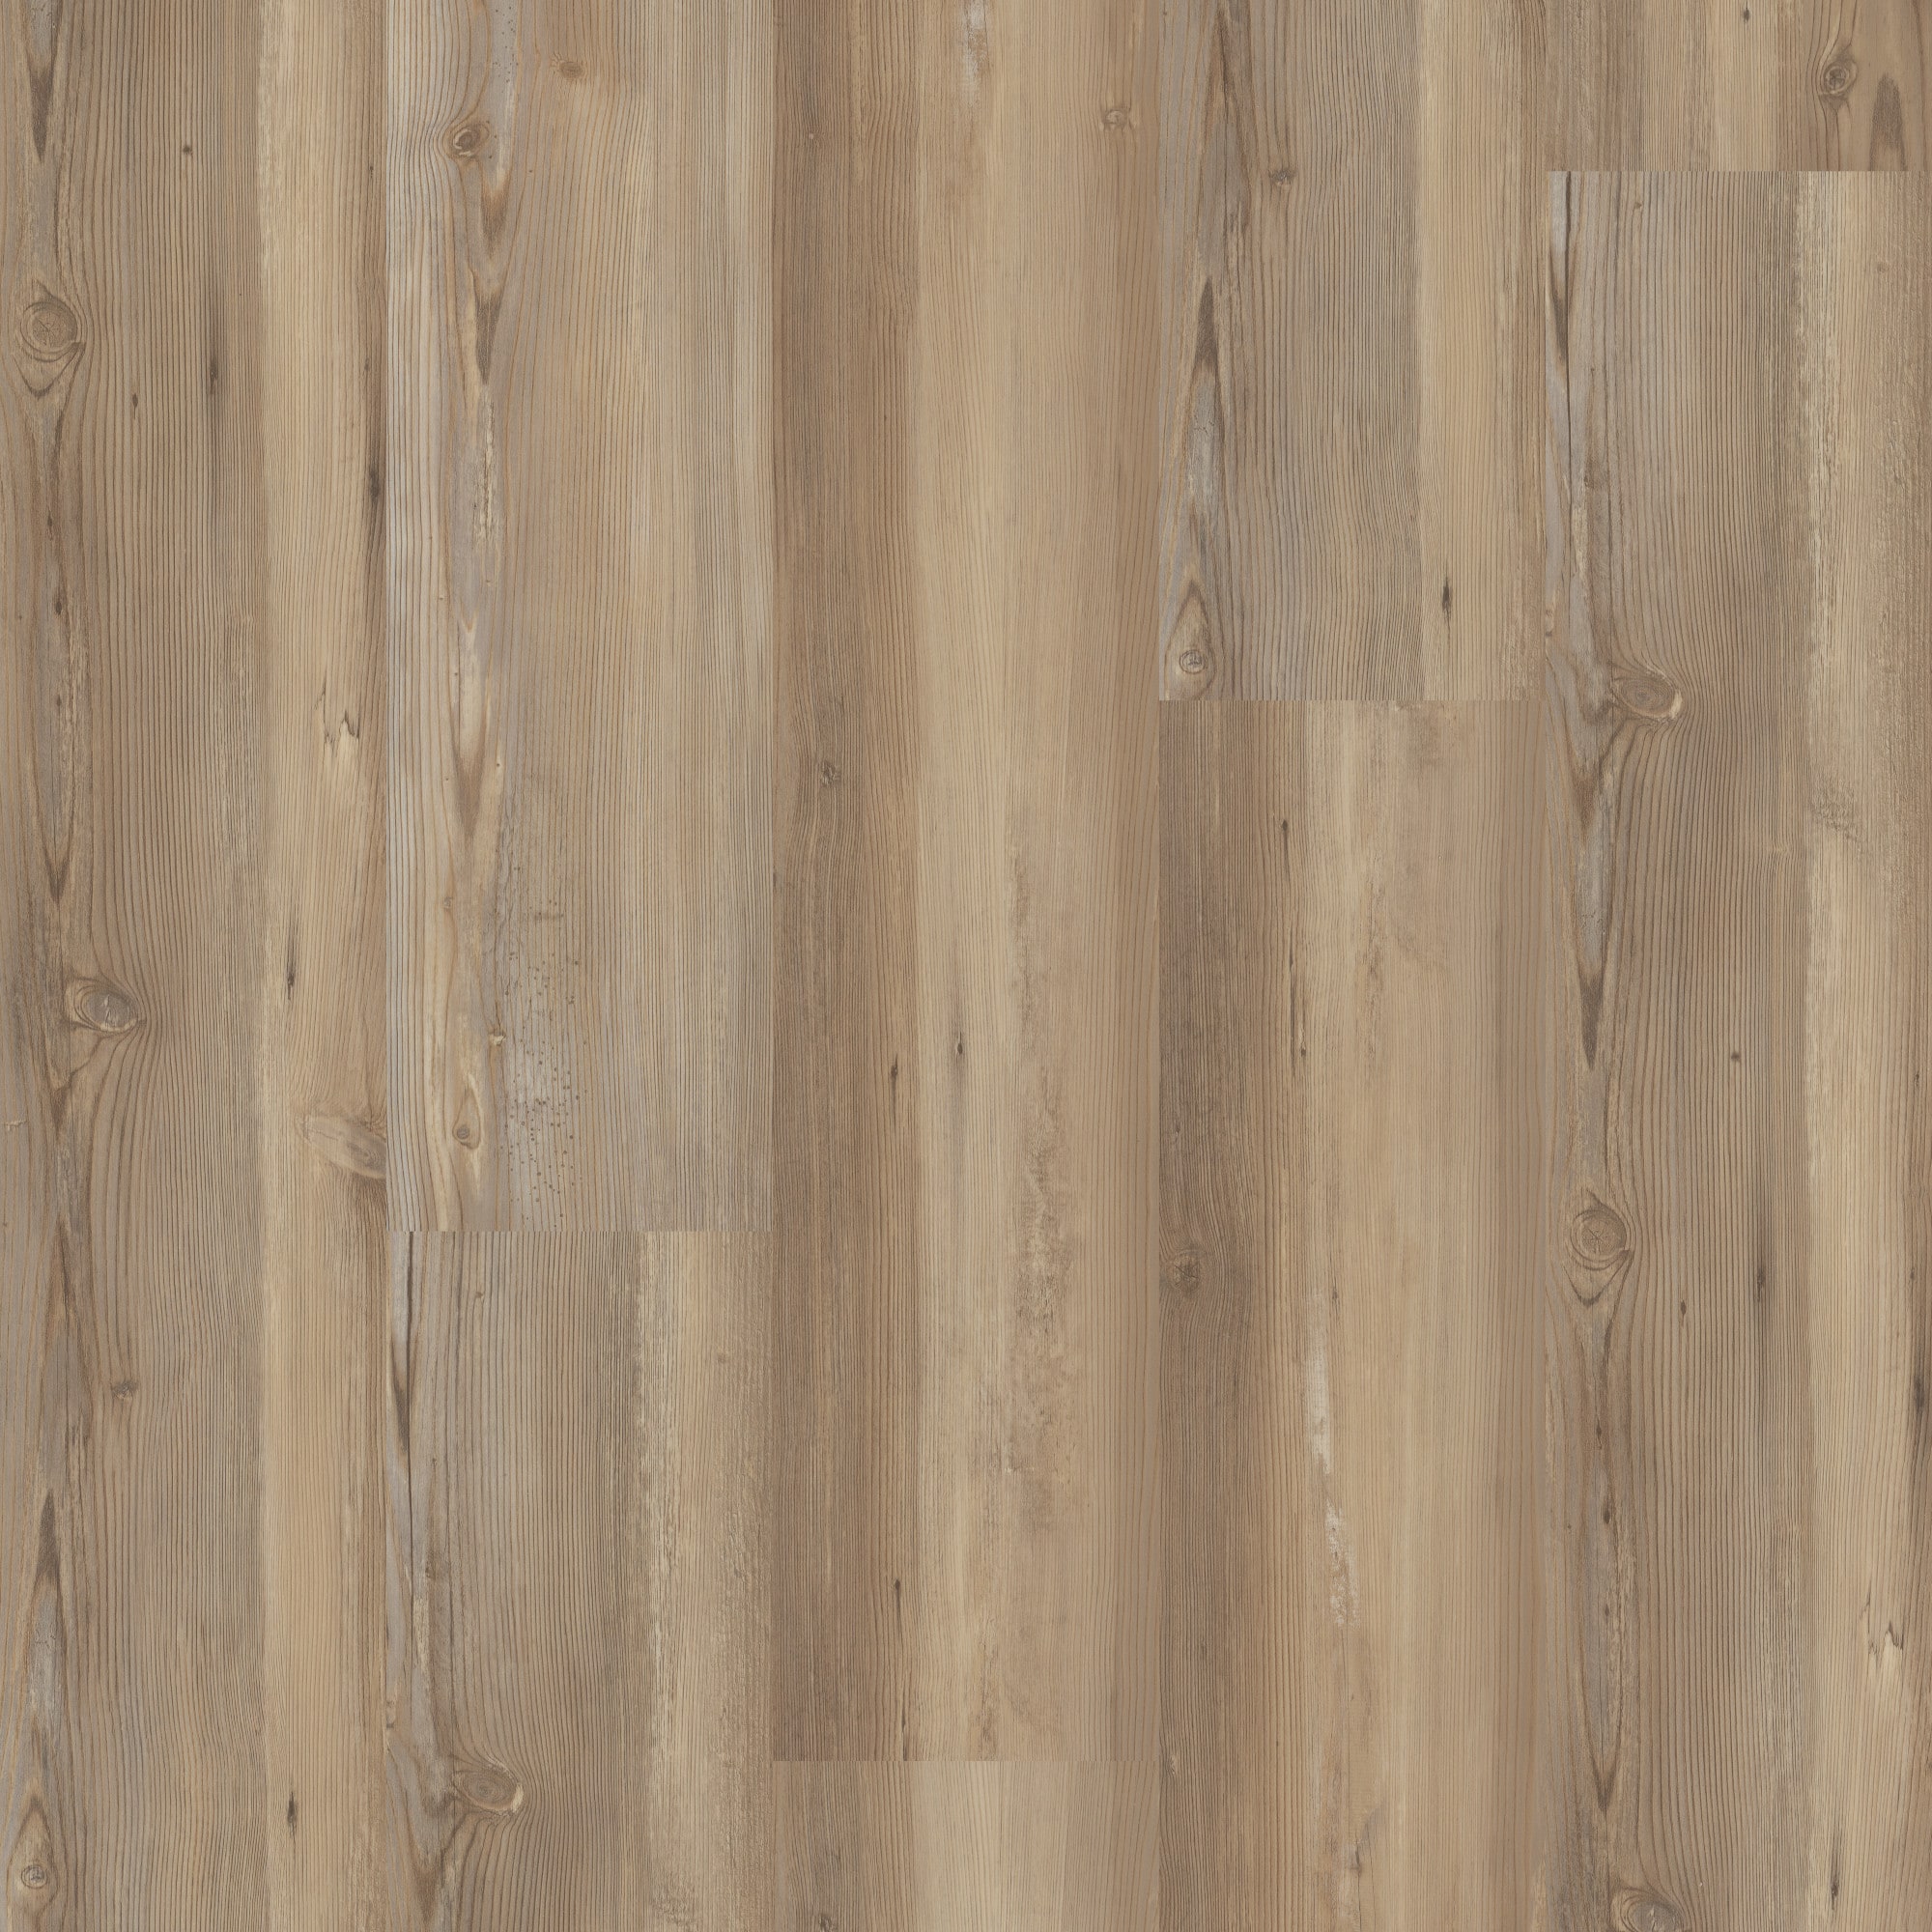 Waterproof Wood-Pattern Luxury Vinyl Flooring for House Decorations